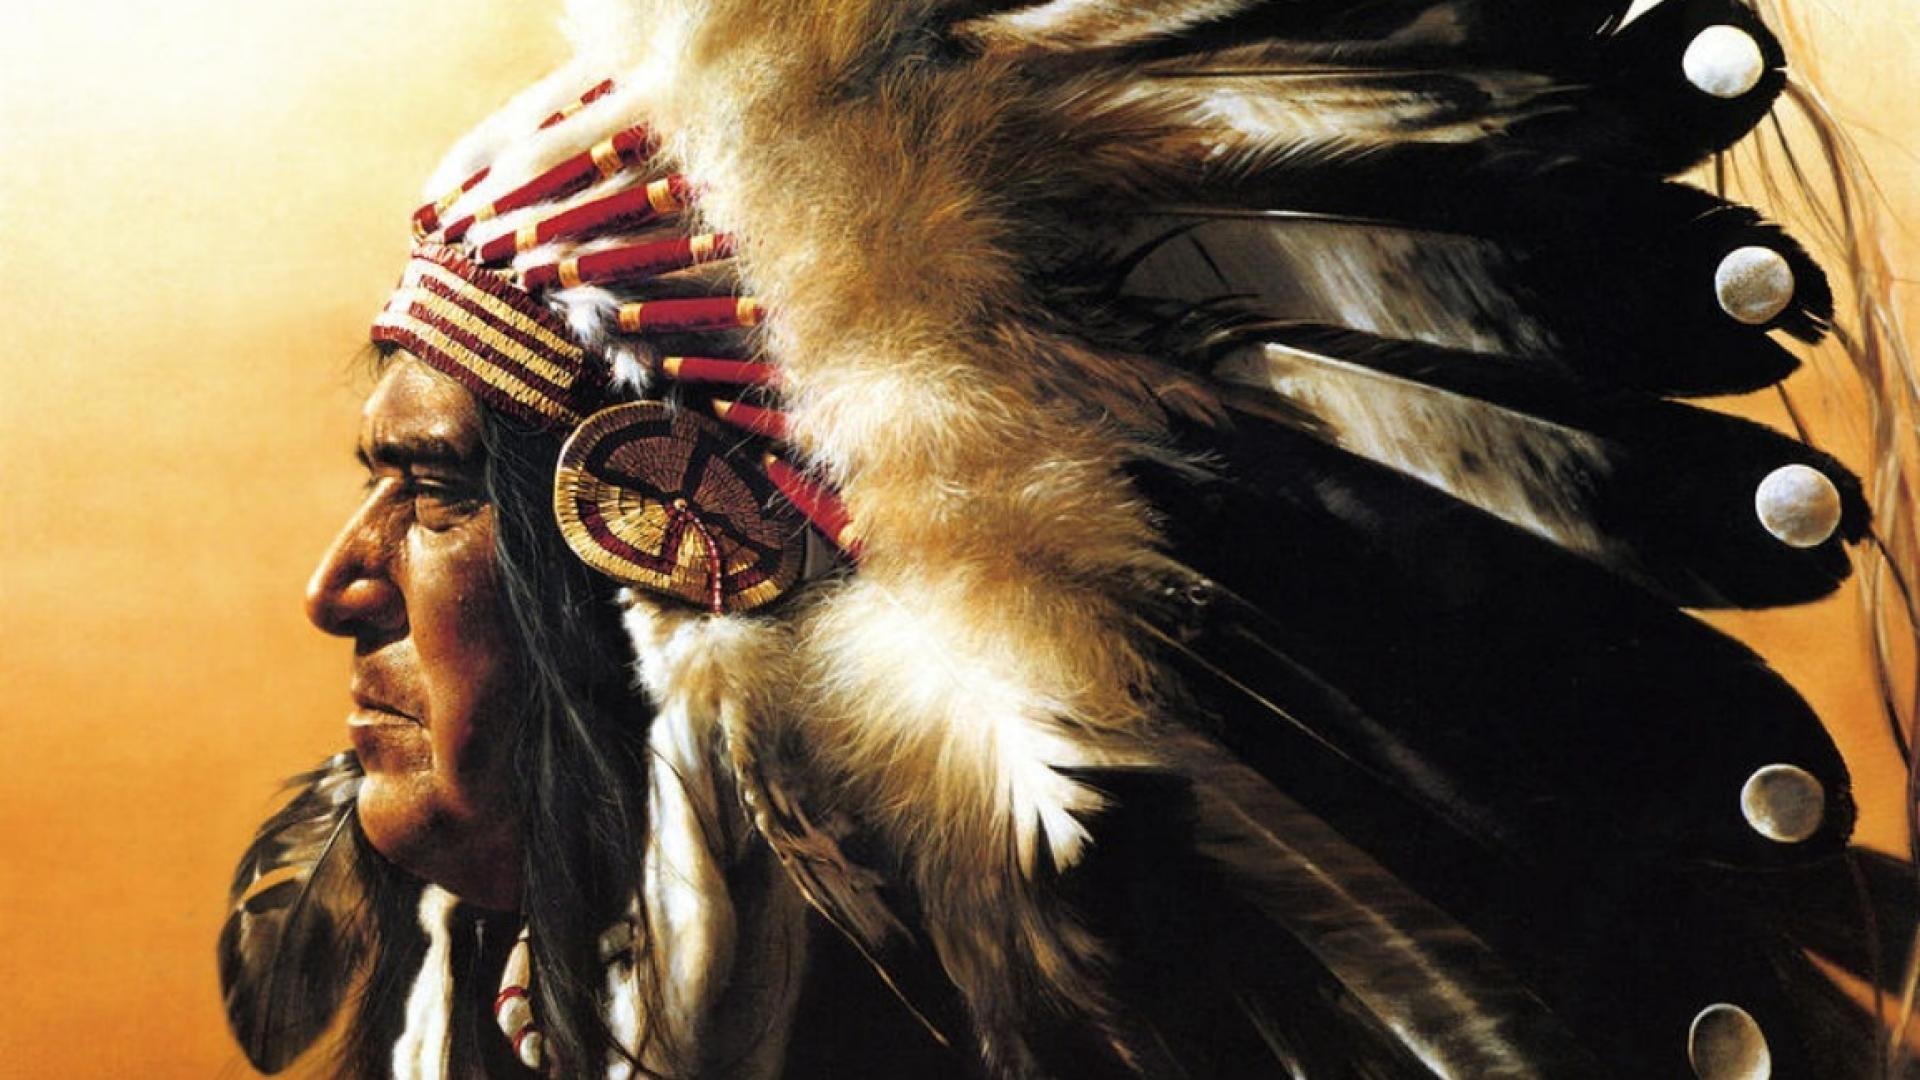 Индеец mp3. Индейцы Северной Америки Апачи. Индейцы Апачи вожди. Американские индейцы вожди индейцев Северной Америки. Шаман Апачи.